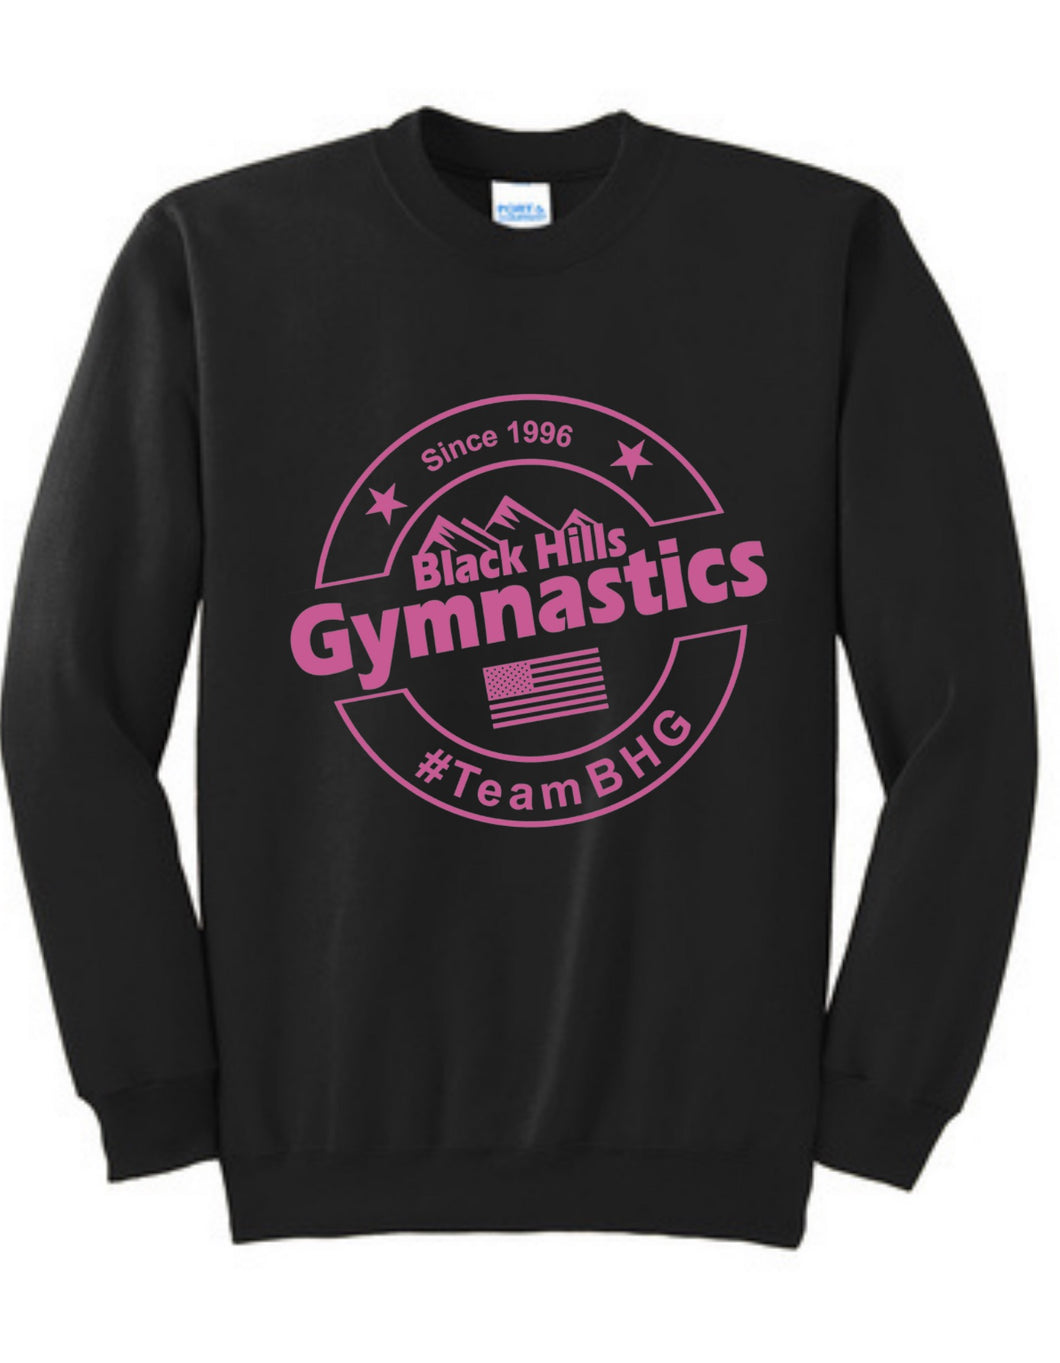 #TeamBHG Classic Collection Youth Sweatshirt